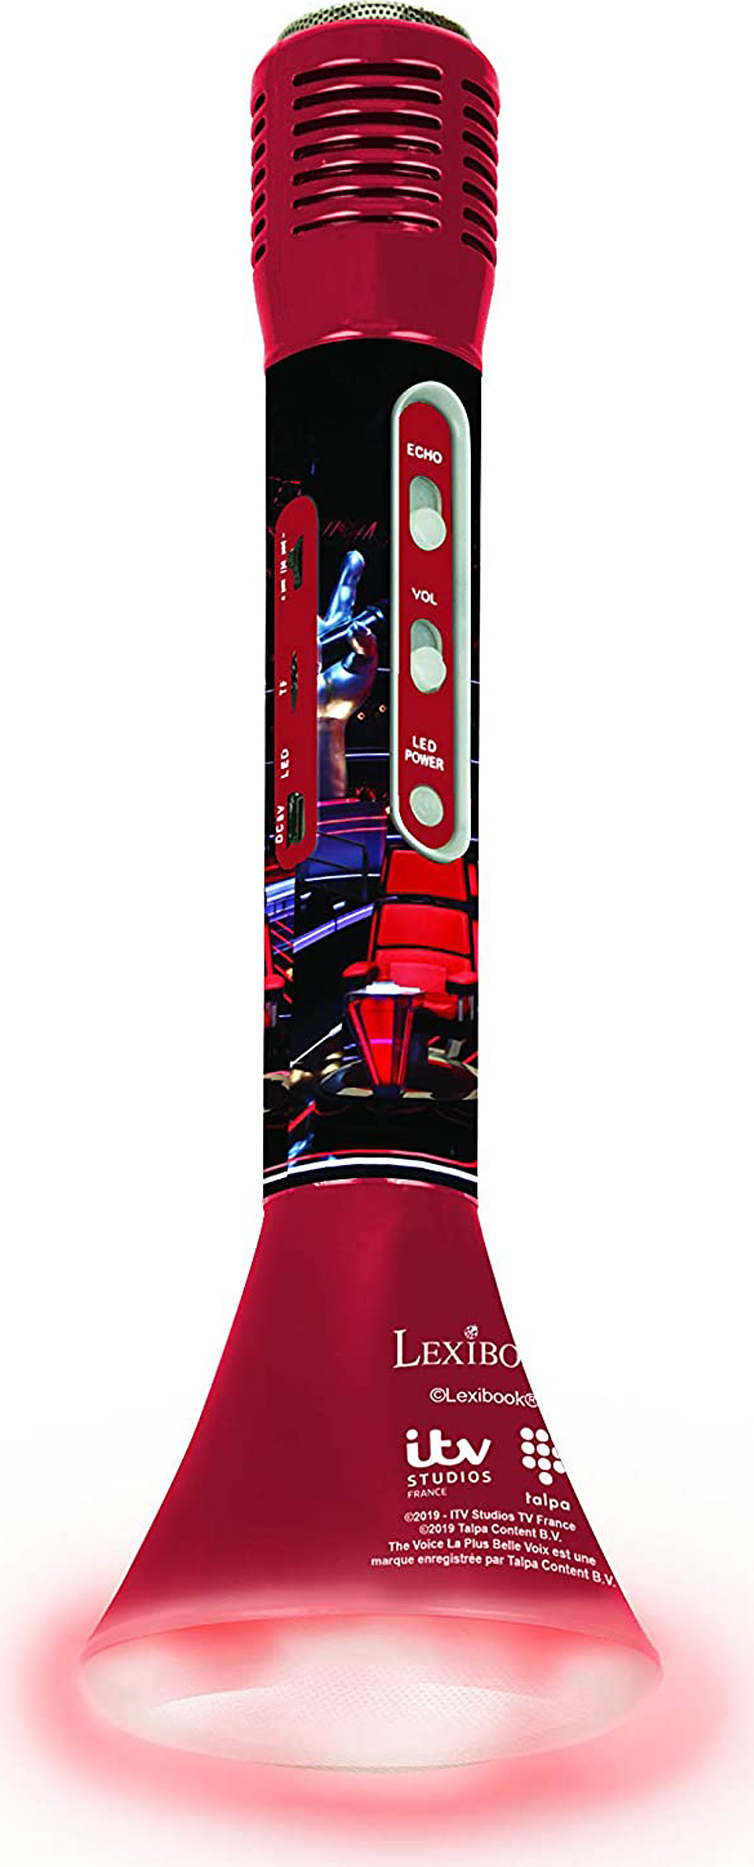 Bezdrátový karaoke mikrofon The Voice s vestavěným reproduktorem a světelnými efekty